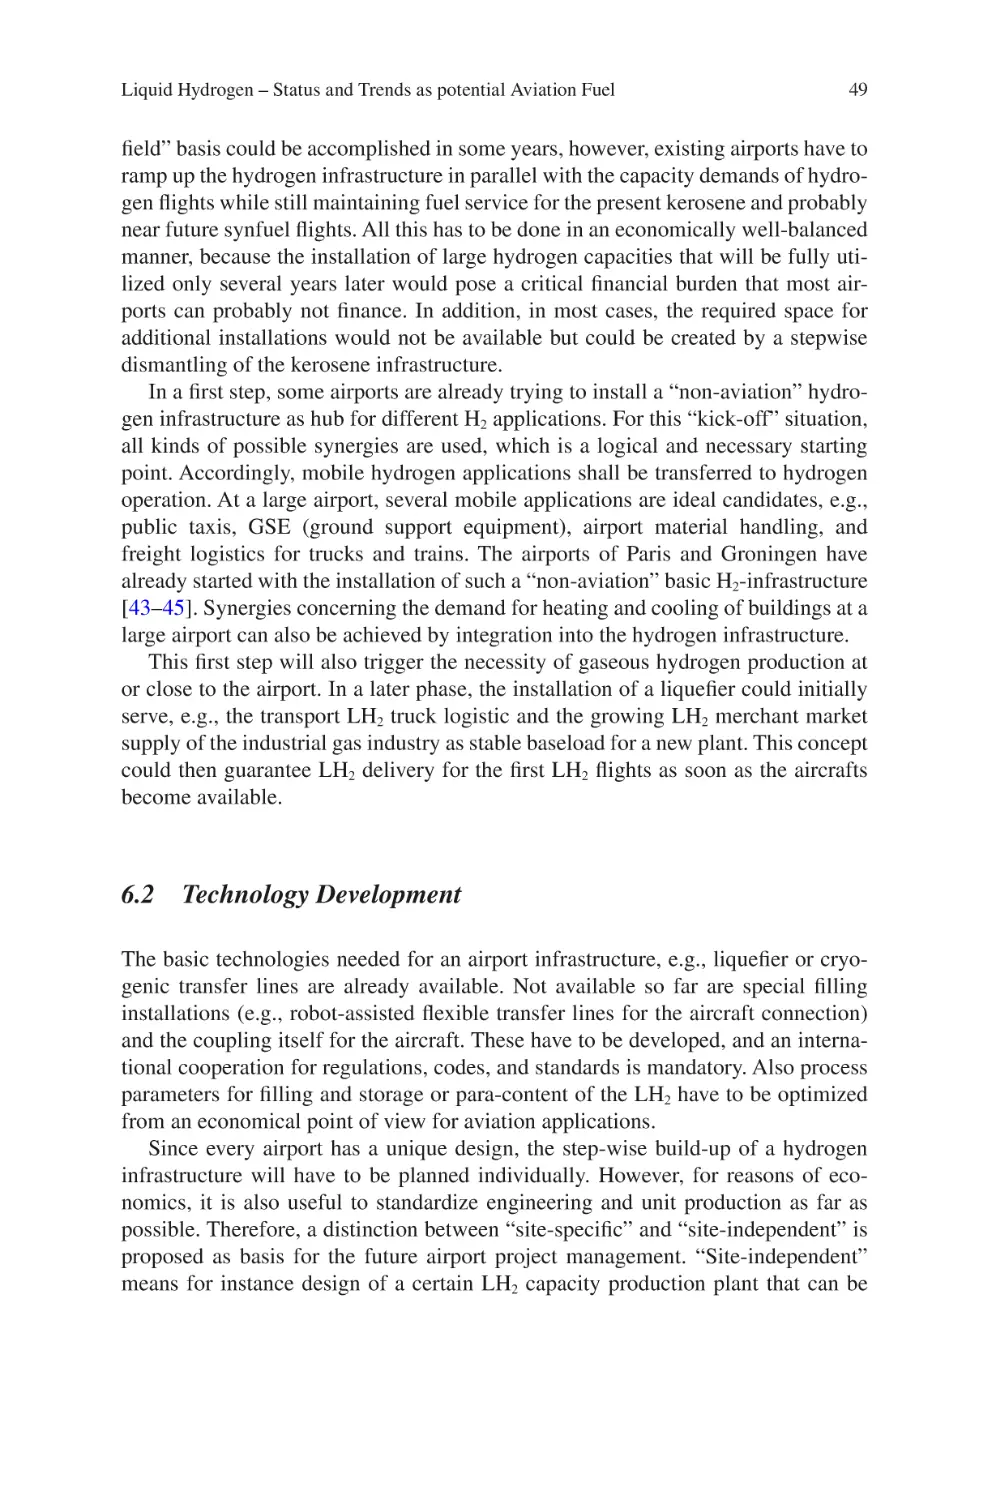 6.2 Technology Development